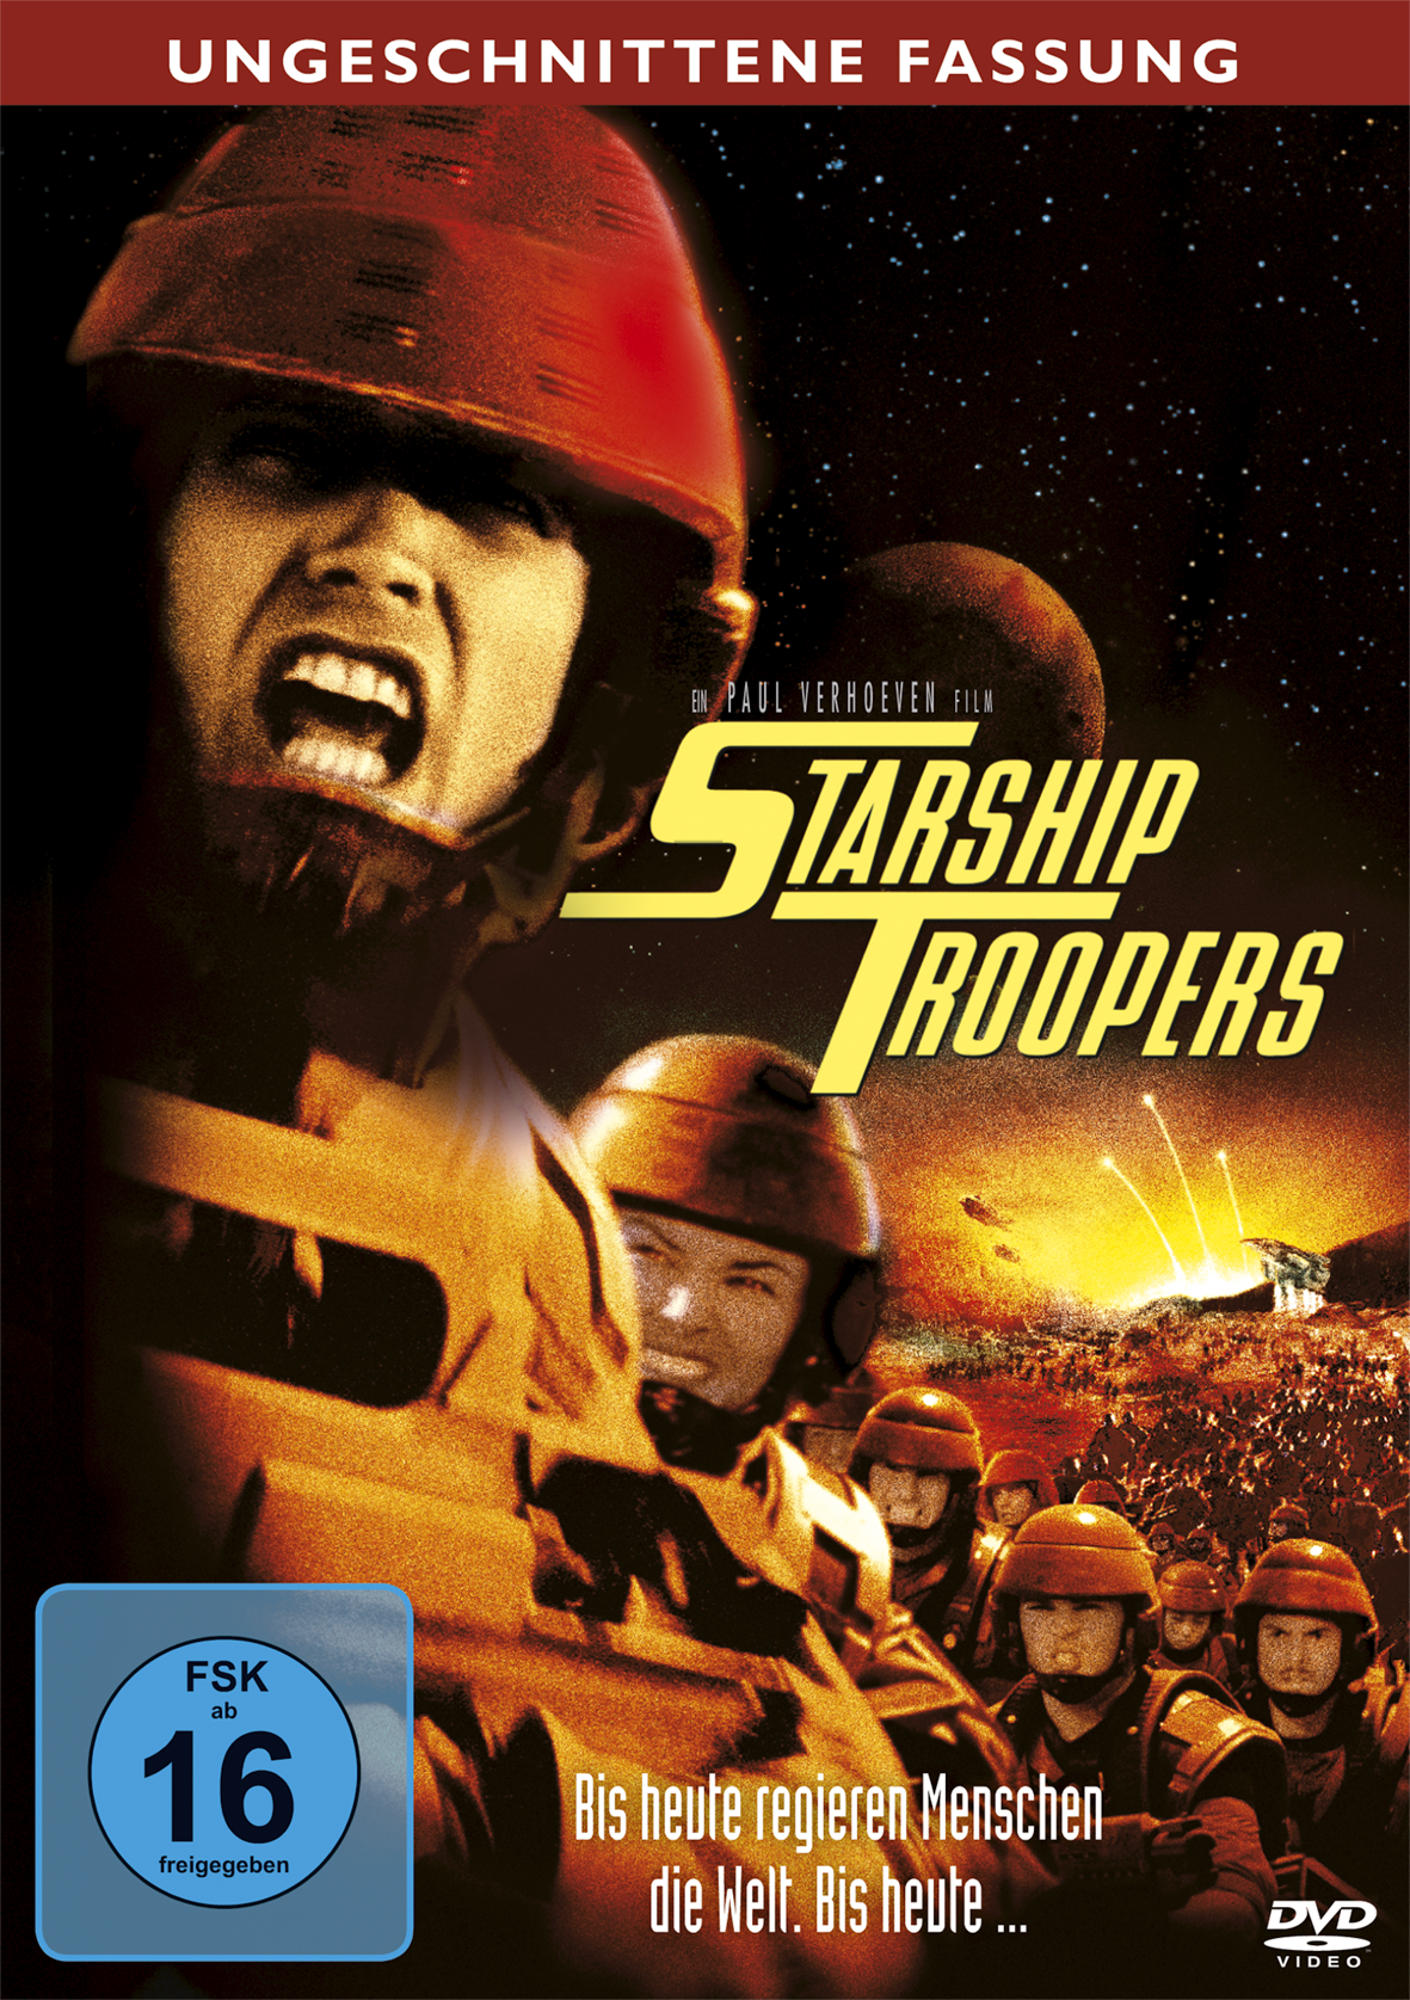 Starship - DVD Troopers Fassung Ungeschnittene